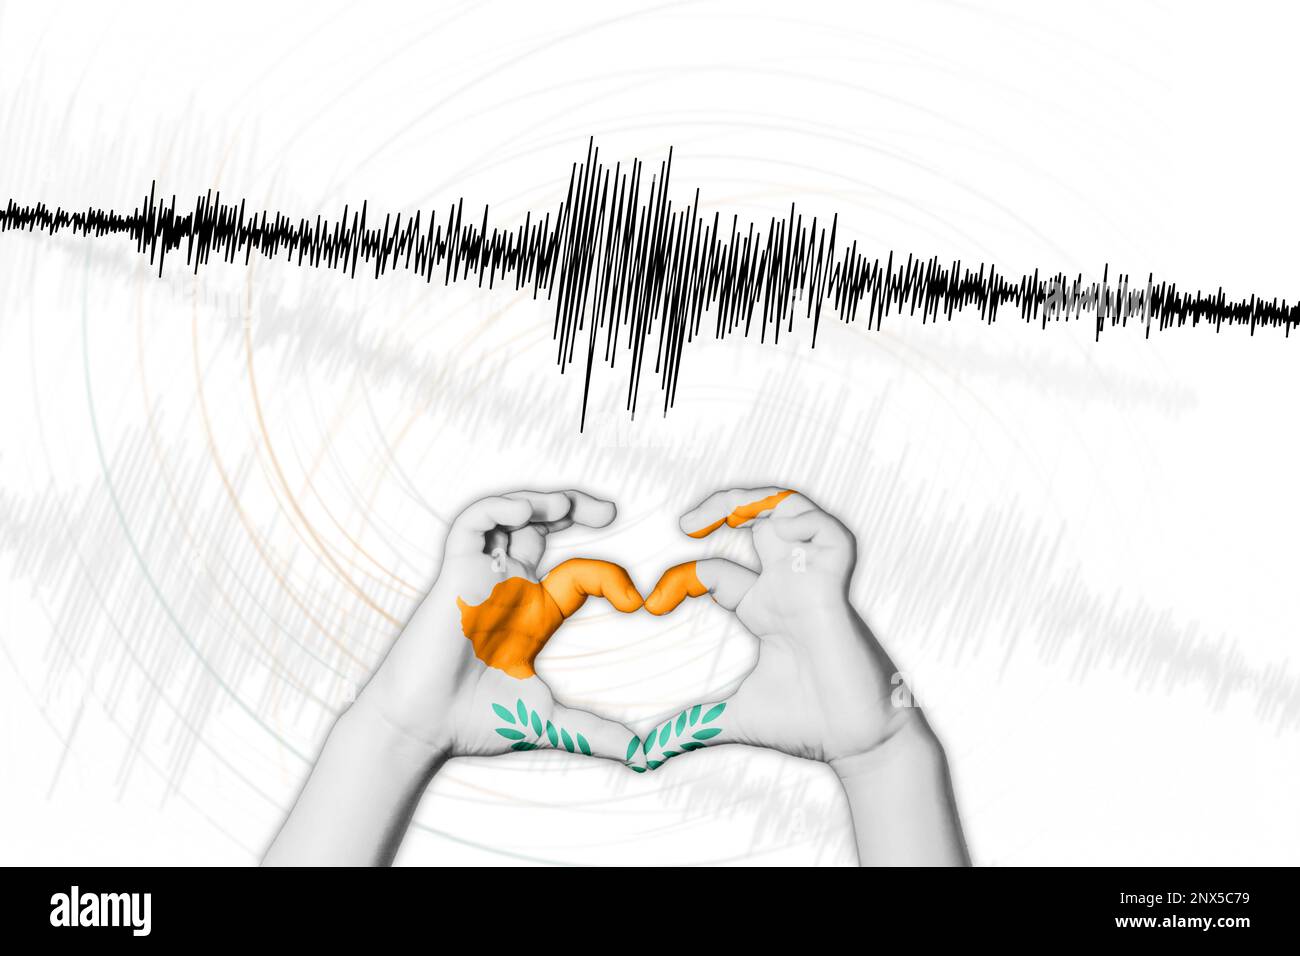 Erdbeben Zyperns Symbol der Heart Richter Scale Stockfoto